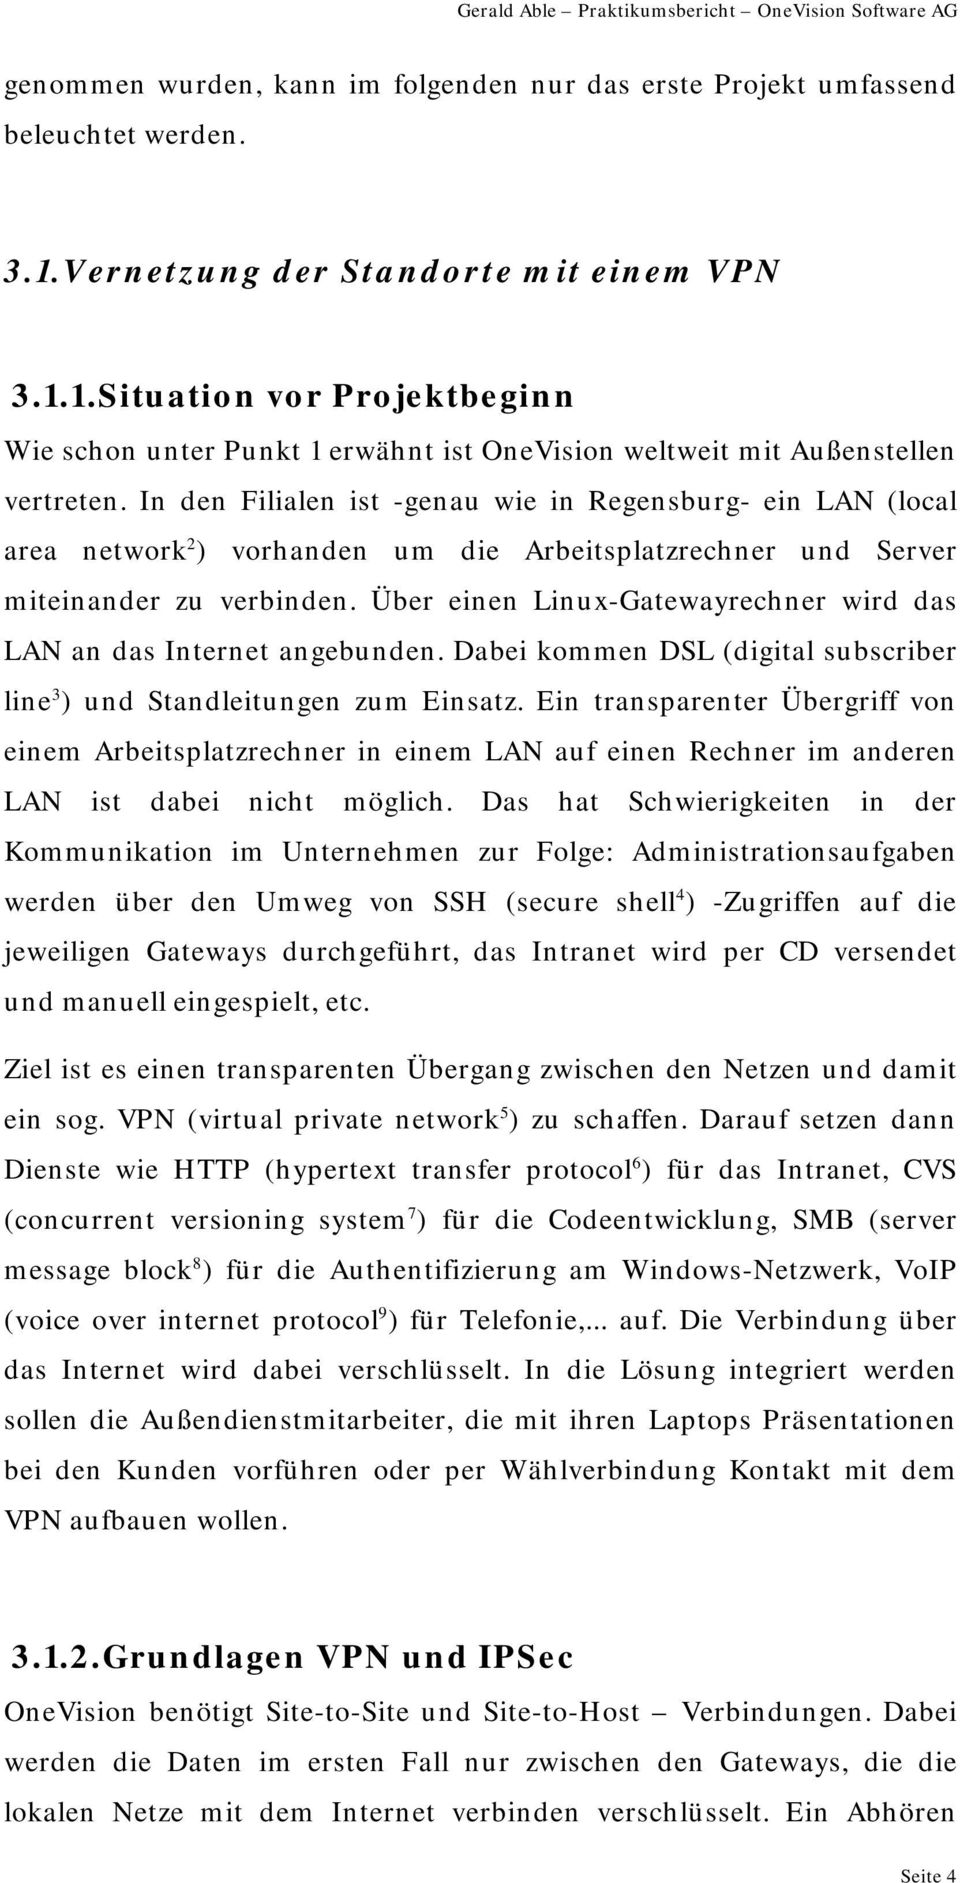 Über einen Linux-Gatewayrechner wird das LAN an das Internet angebunden. Dabei kommen DSL (digital subscriber line 3 ) und Standleitungen zum Einsatz.